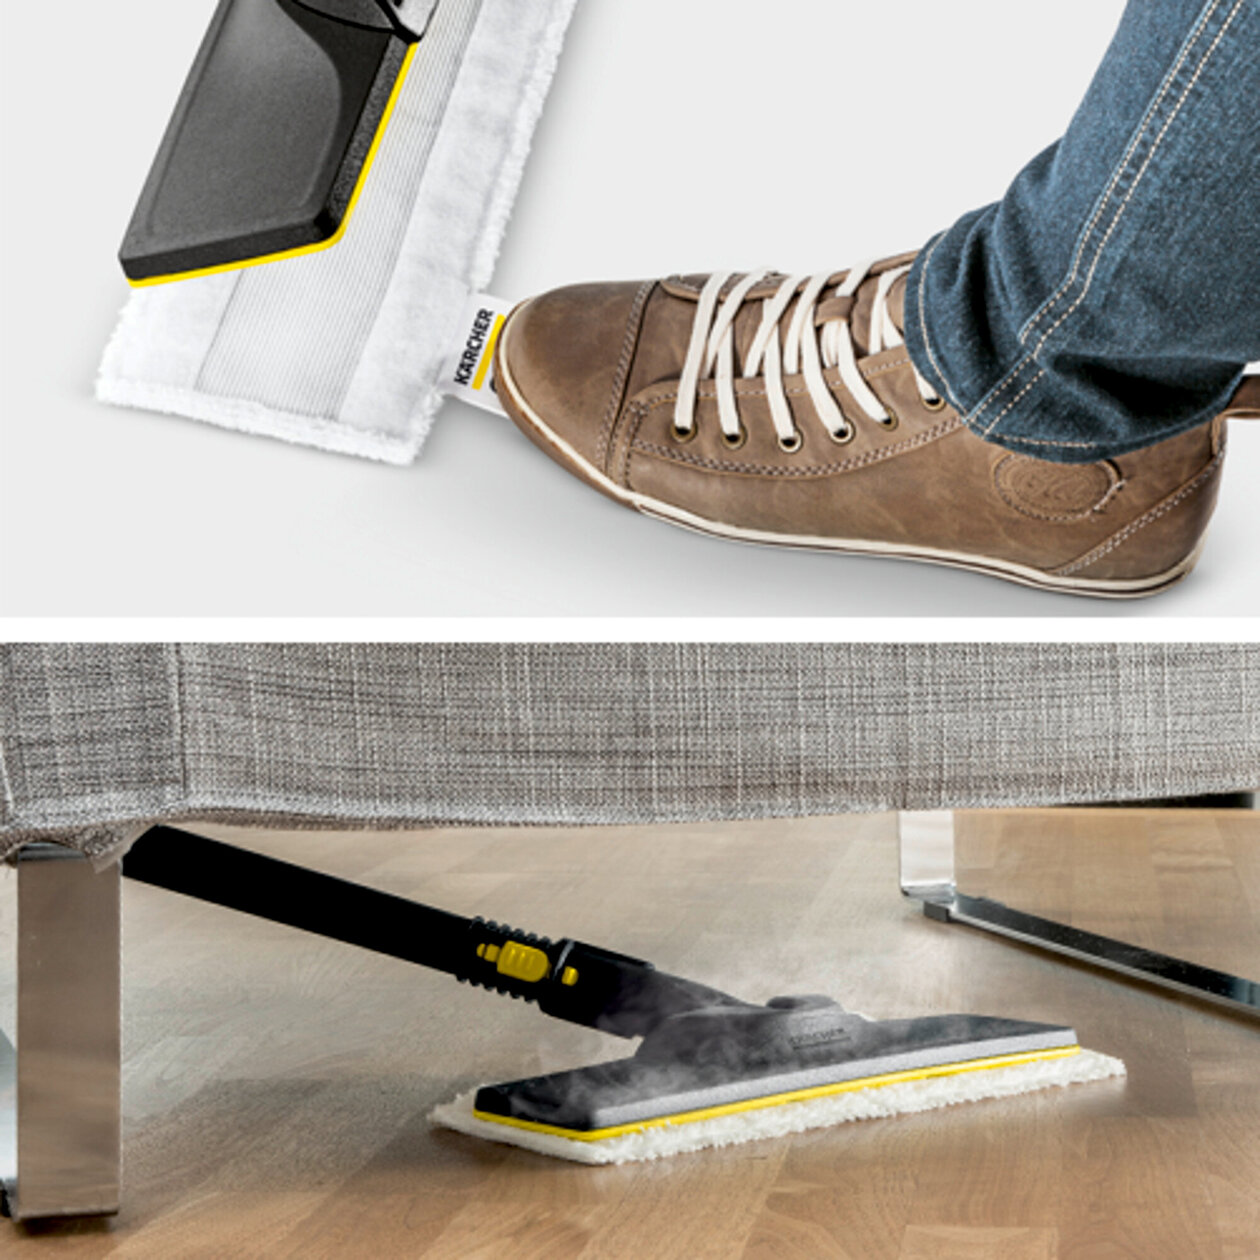  Parný čistič SC 3 EasyFix: Súprava na čistenie podlahy EasyFix s flexibilným kĺbom na podlahovej hubici a pohodlným suchým zipsom na upevnenie utierky na podlahu